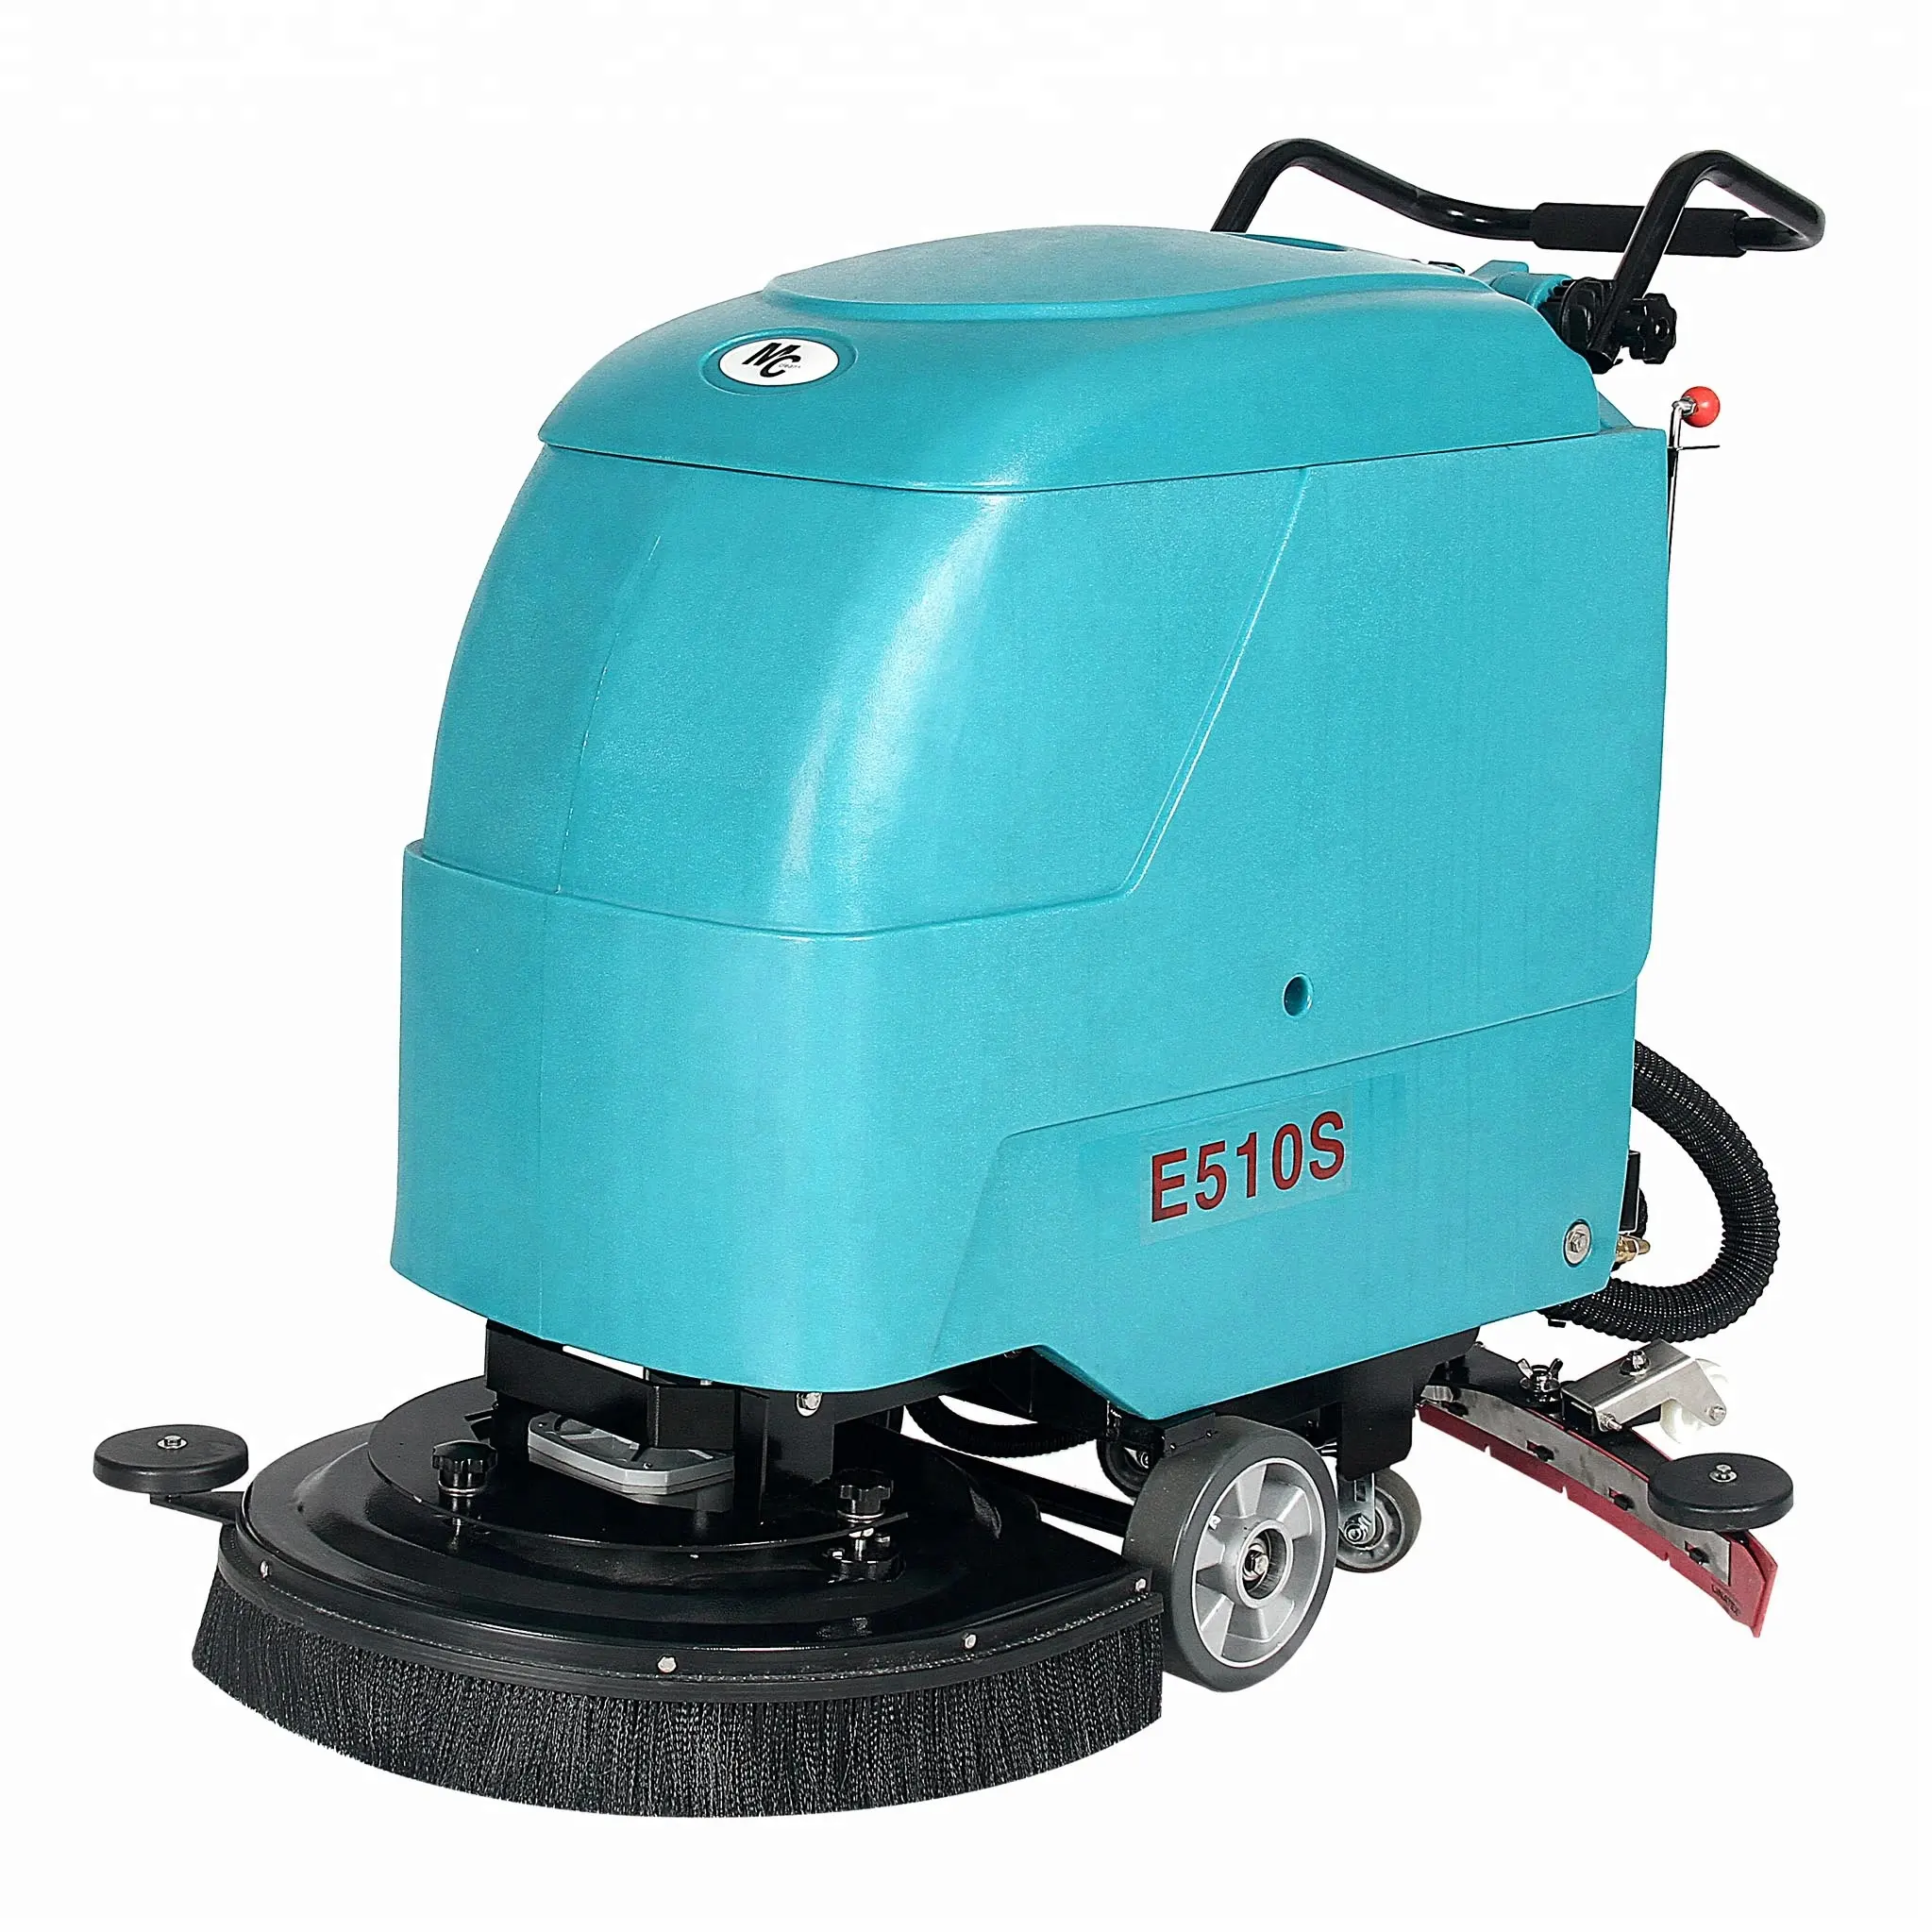 Máquina industrial E510SE para limpiar suelos, alfombras, máquina de limpieza de alfombras